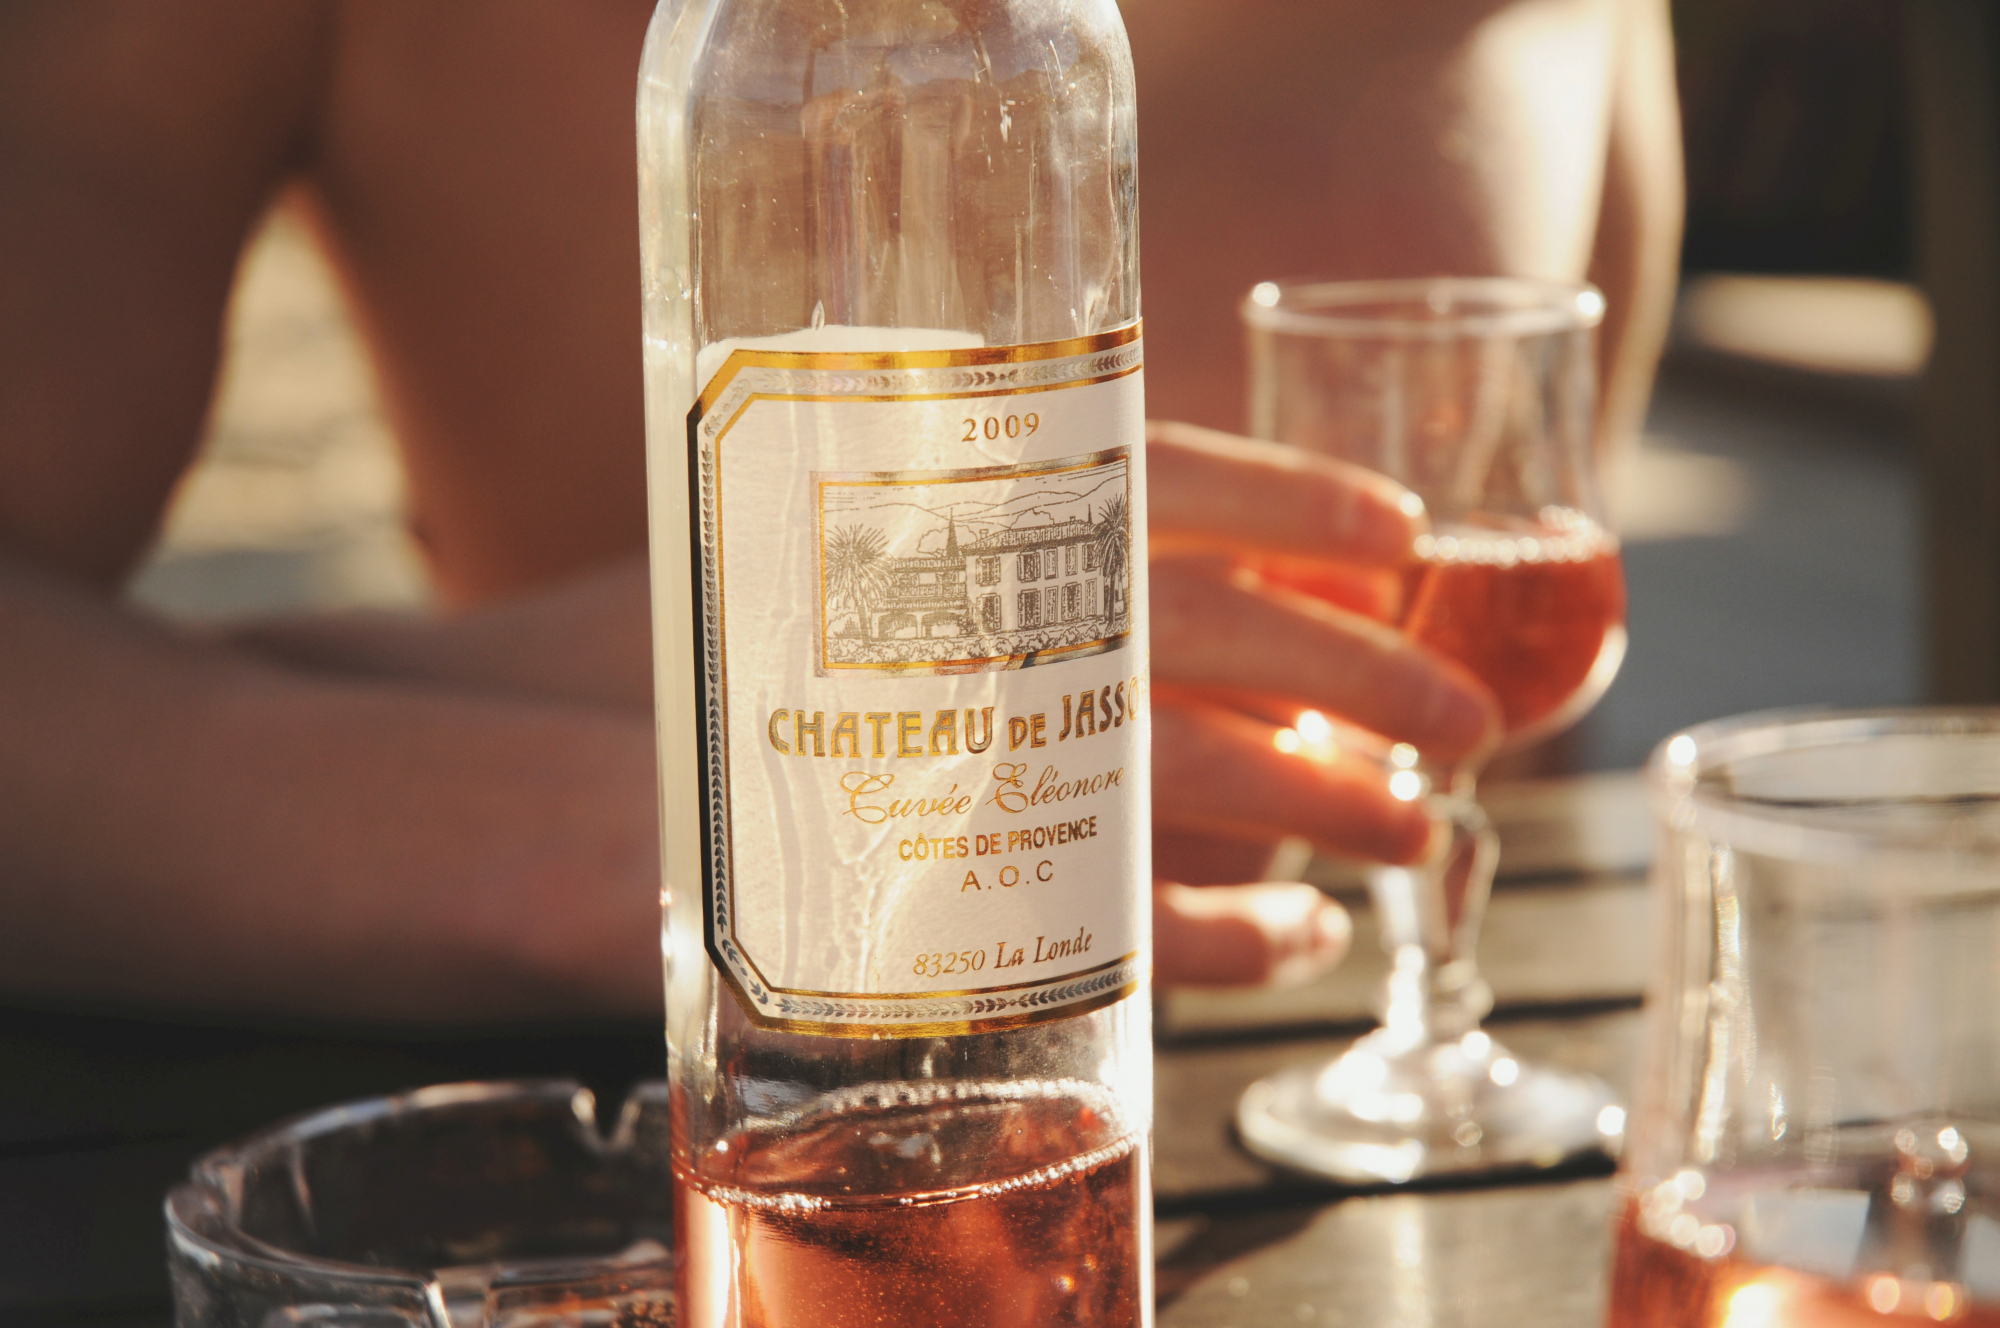 découvrez une sélection de délicieux vins rosés pour égayer vos soirées et accompagner vos repas en toute légèreté. faites éclater les saveurs fruitées et les arômes frais avec nos meilleurs vins rosés.